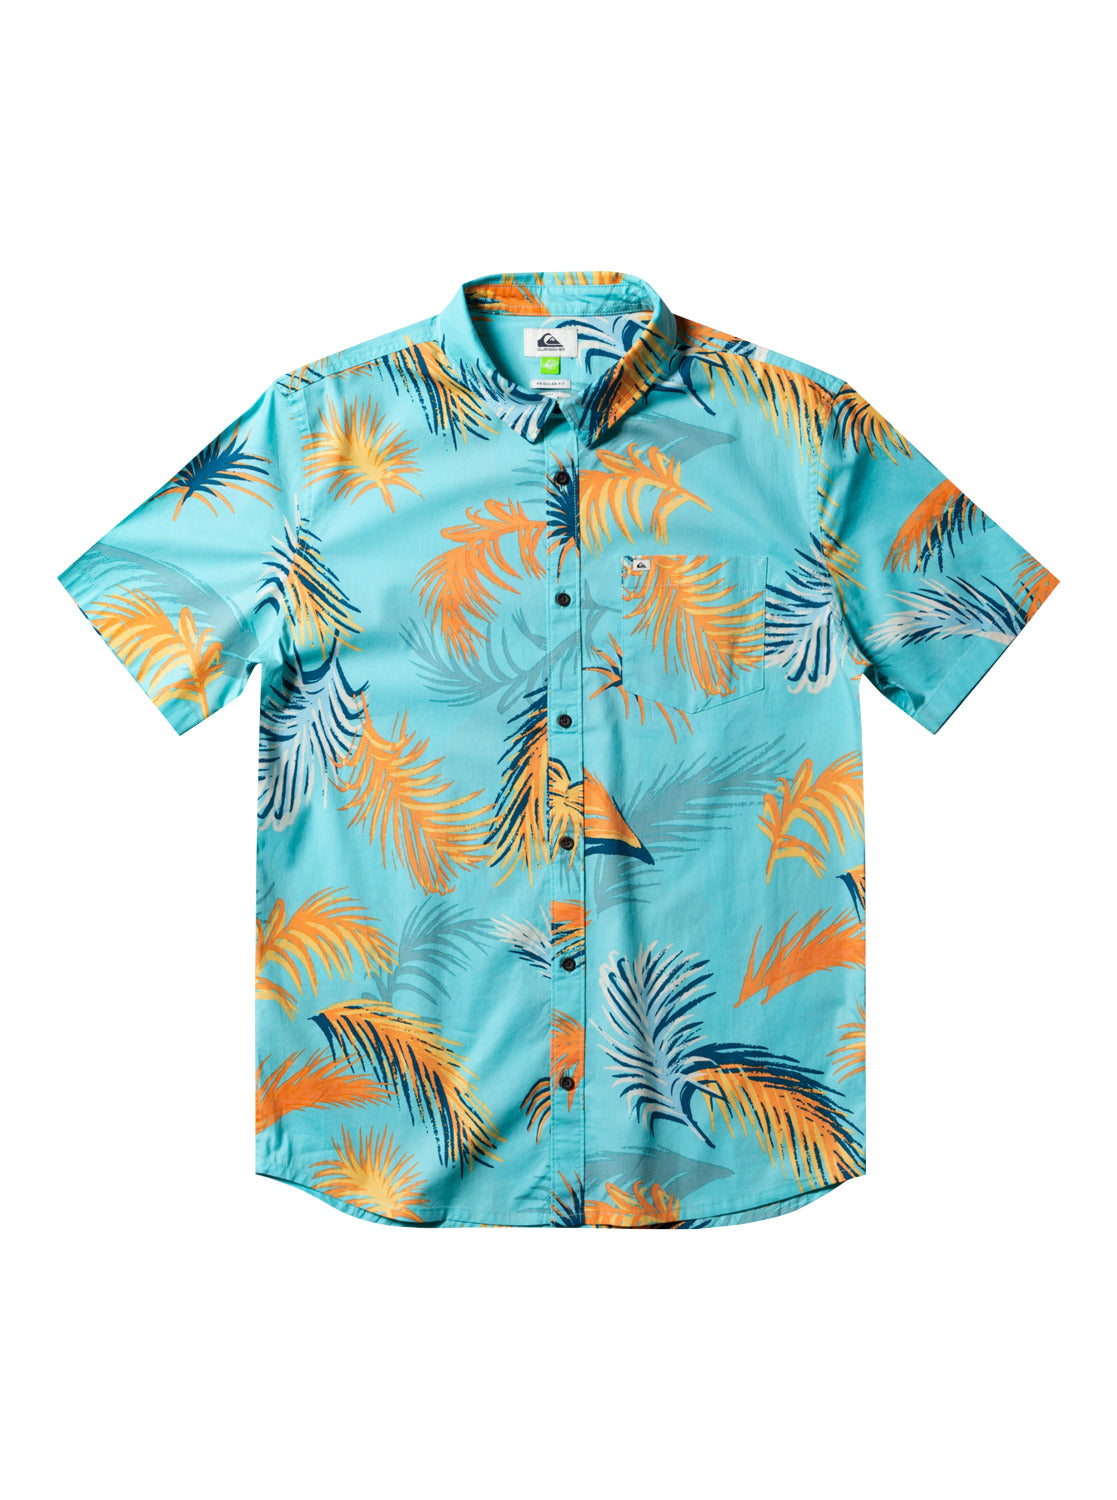 Quiksilver Tropical Gultch SS Shirt BGD6 M